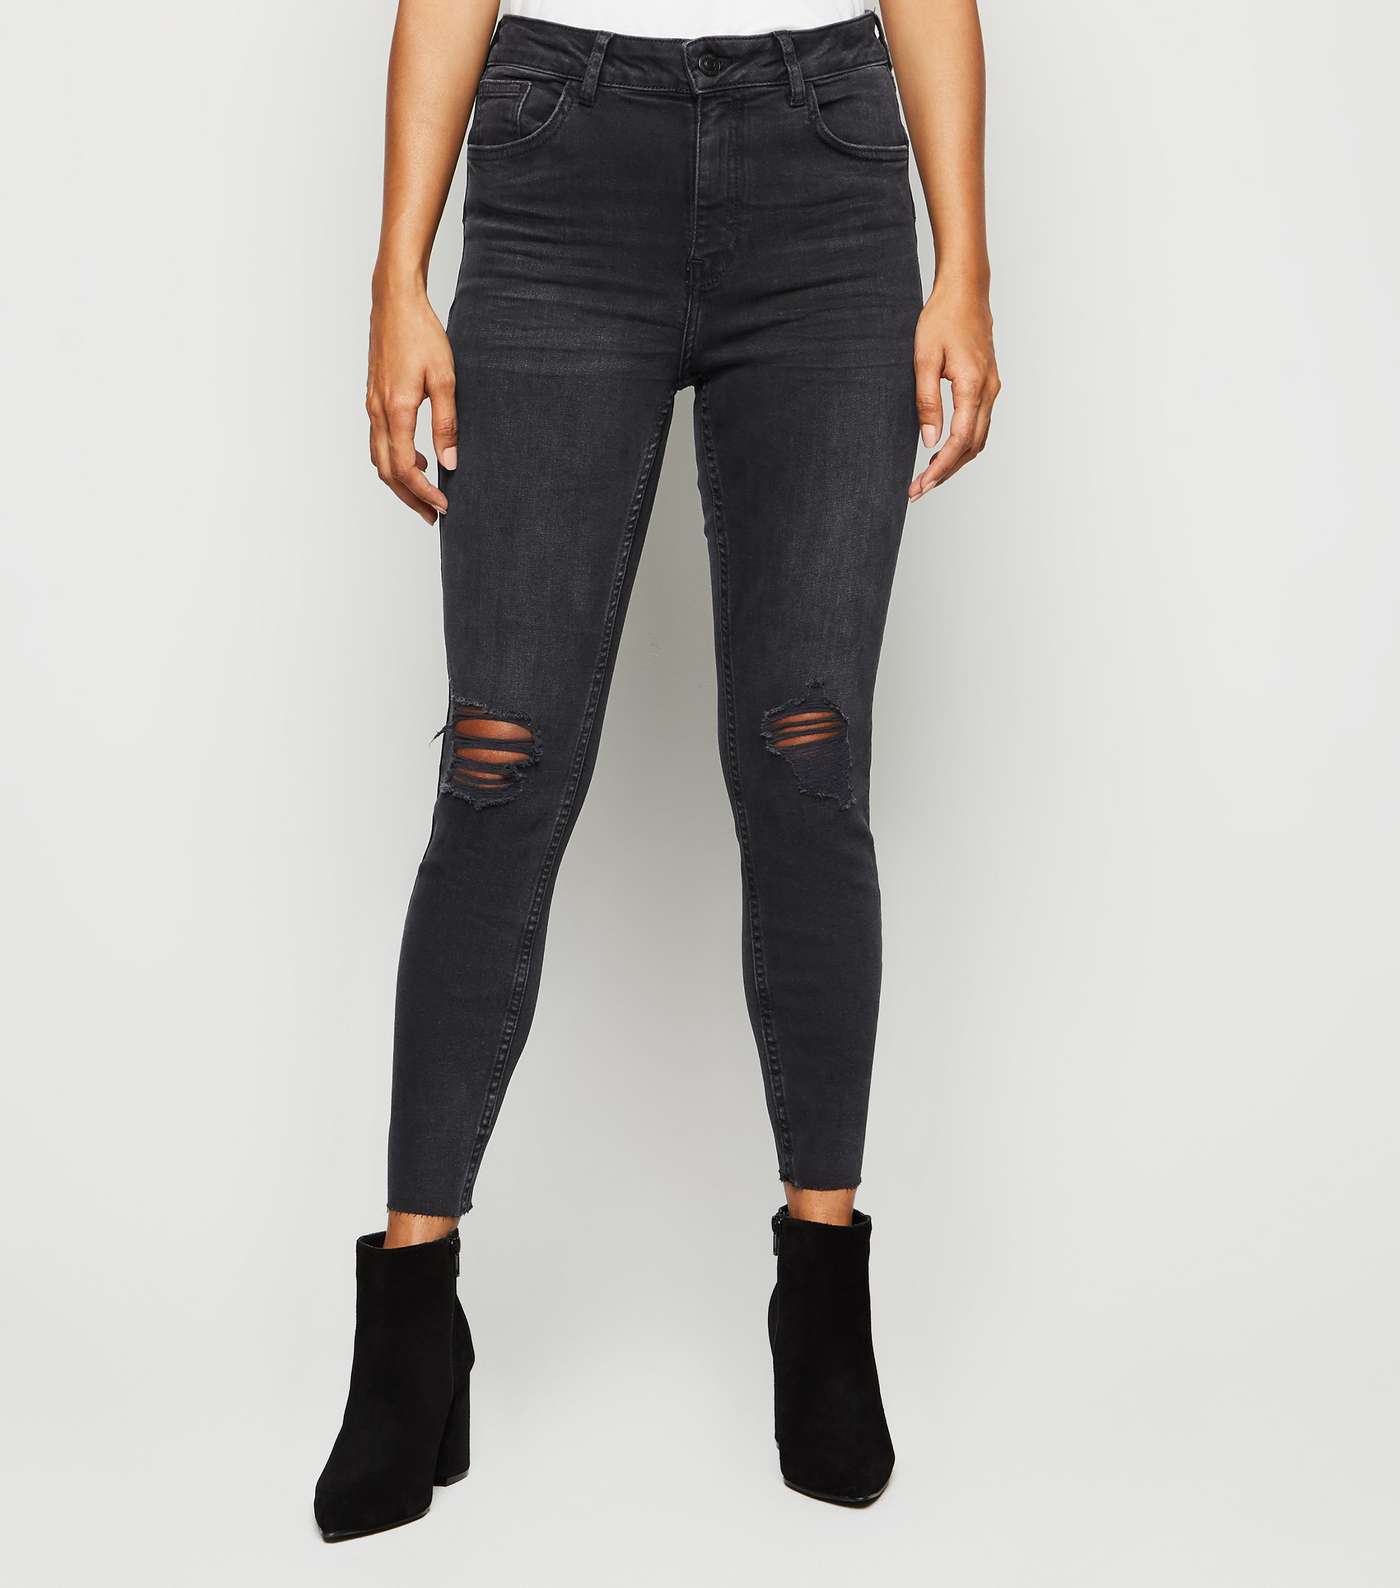 Petite Black High Rise 'Lift & Shape' Skinny Jeans Image 2